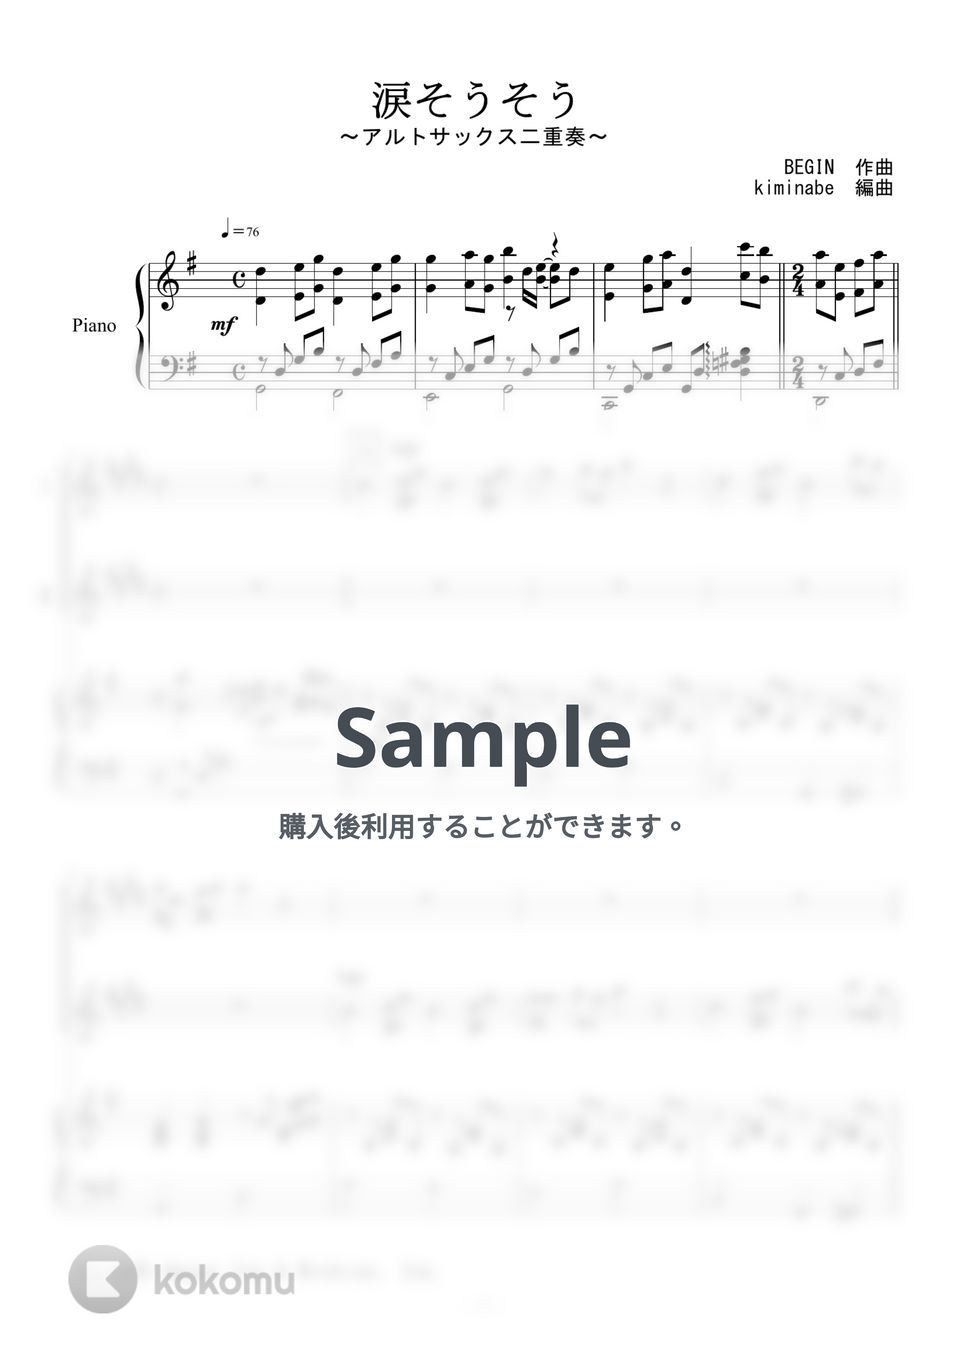 森山良子 - 涙そうそう (アルトサックス二重奏) by kiminabe